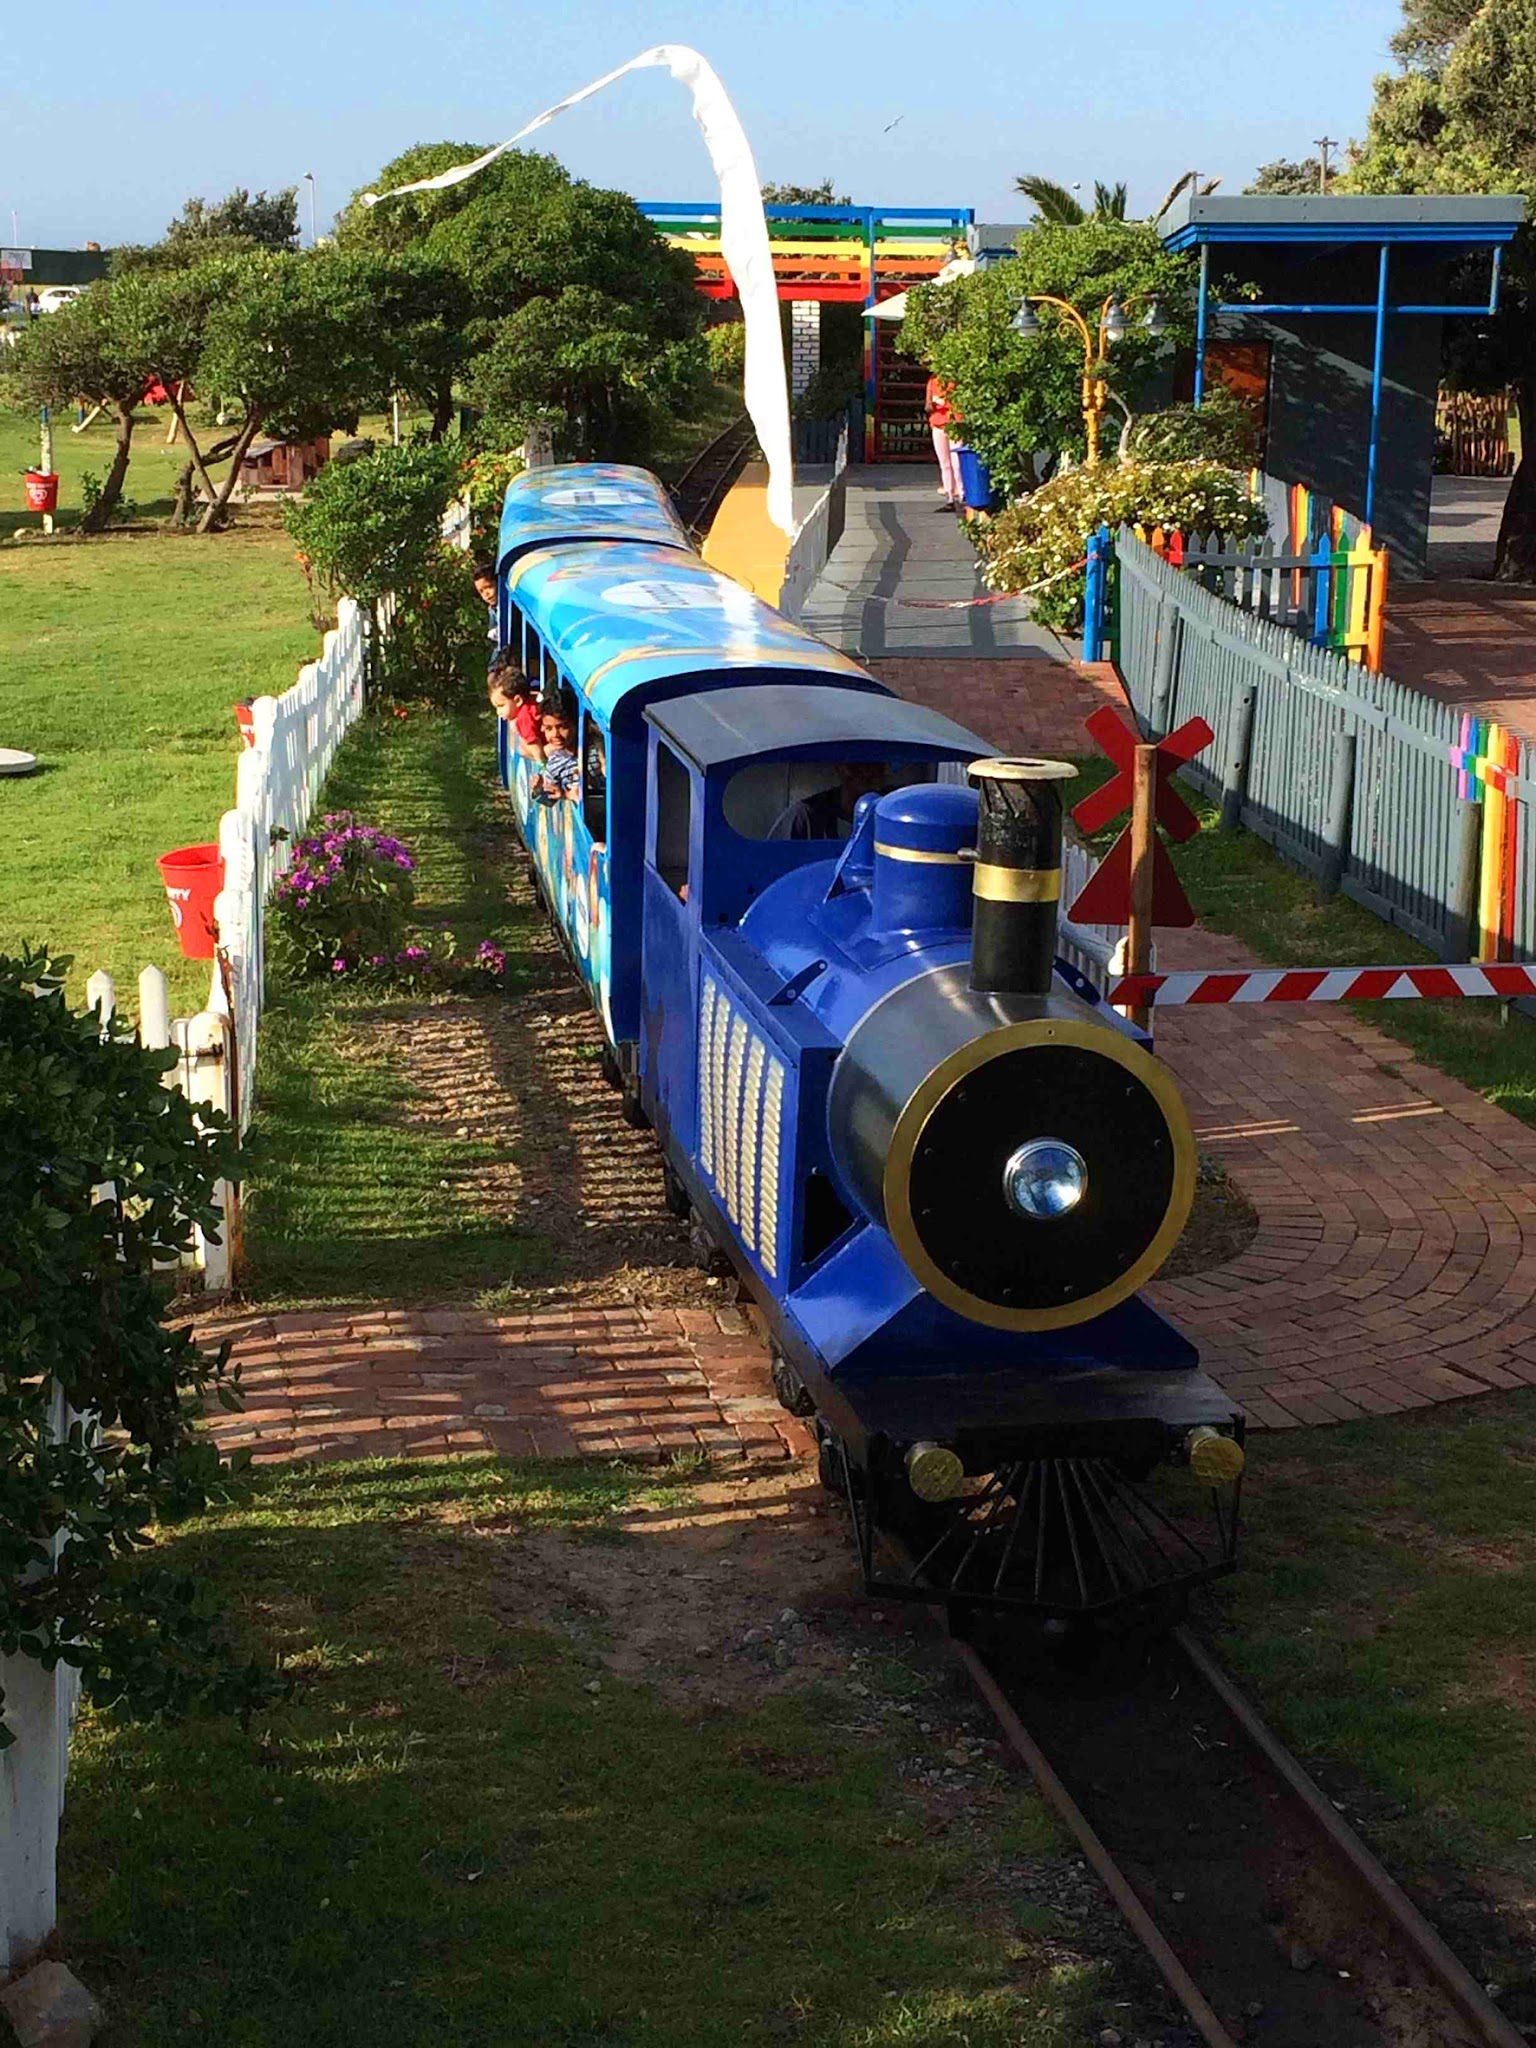  The Blue Train Park